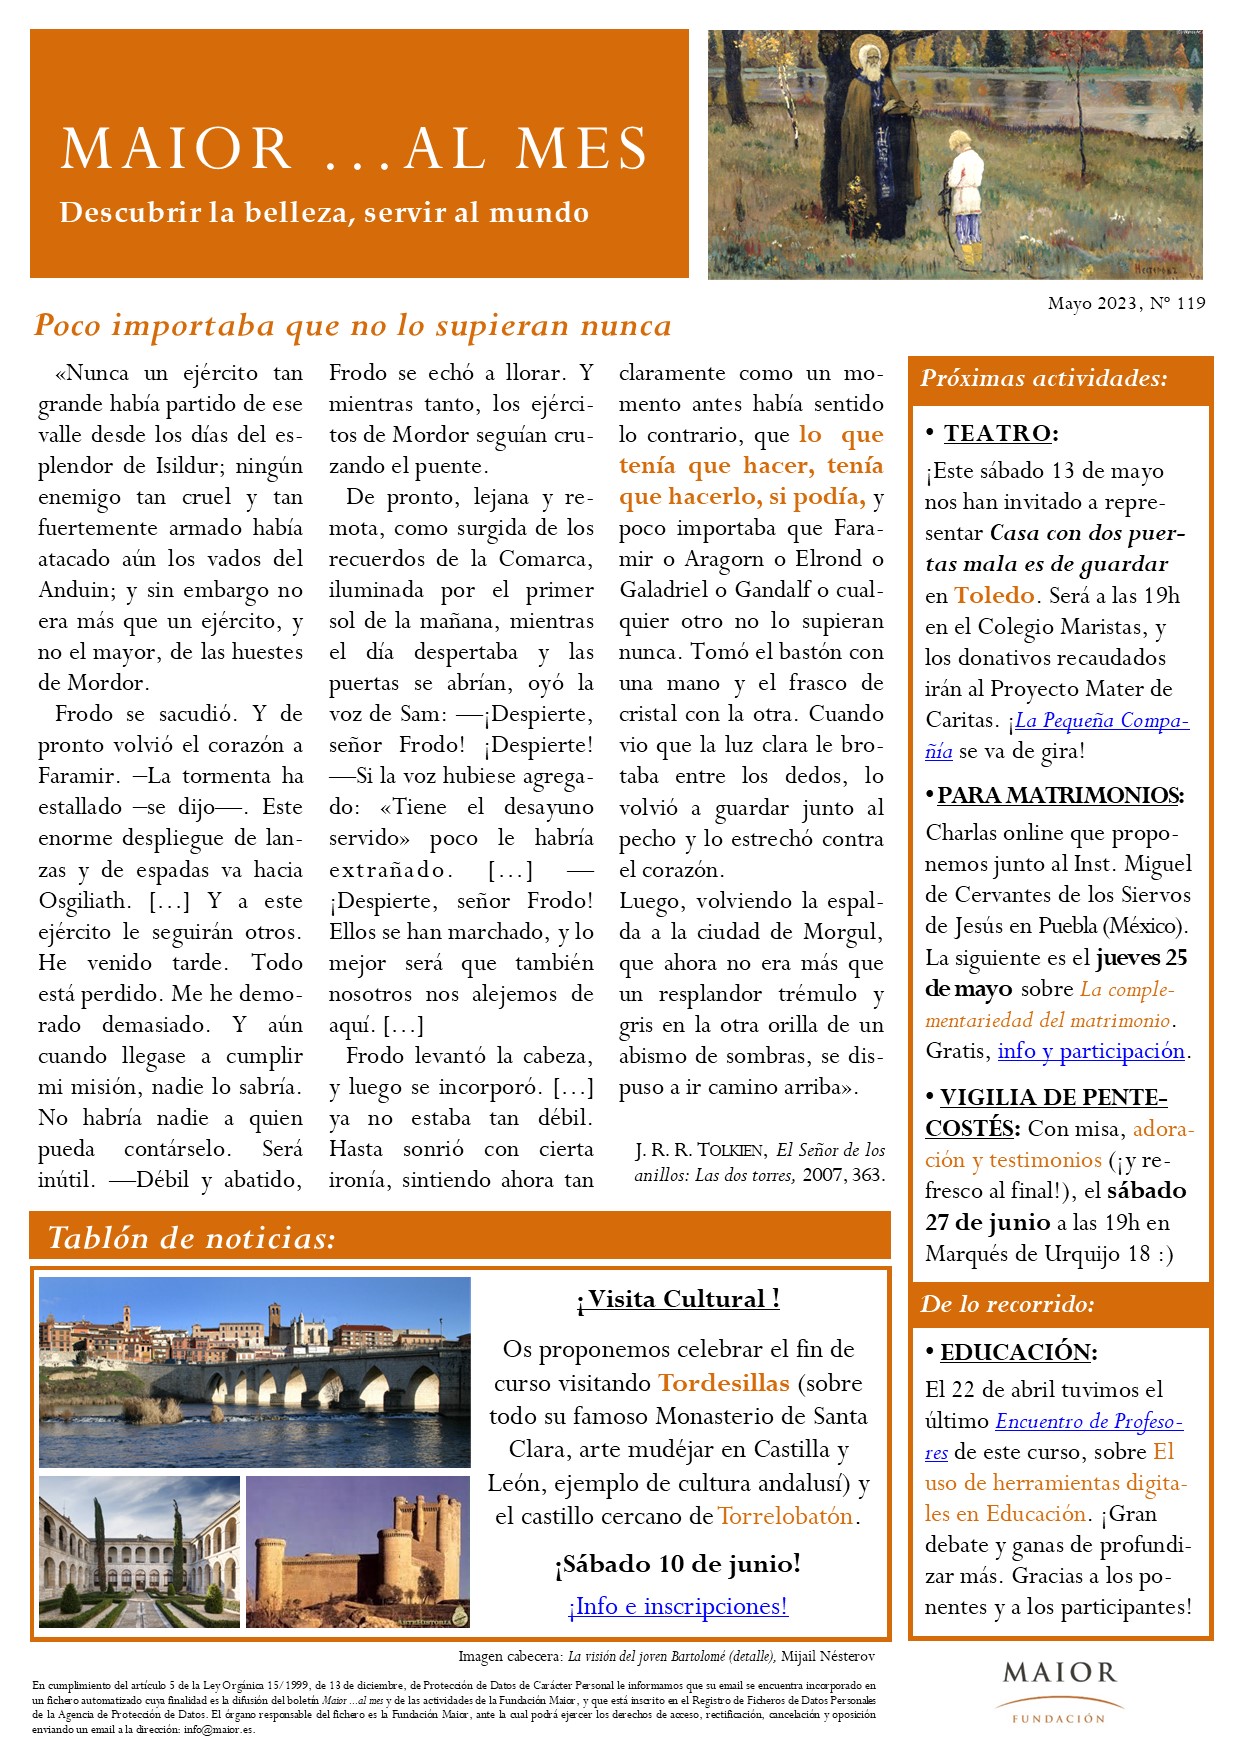 Boletín mensual de noticias y actividades de la Fundación Maior. Edición de mayo 2023